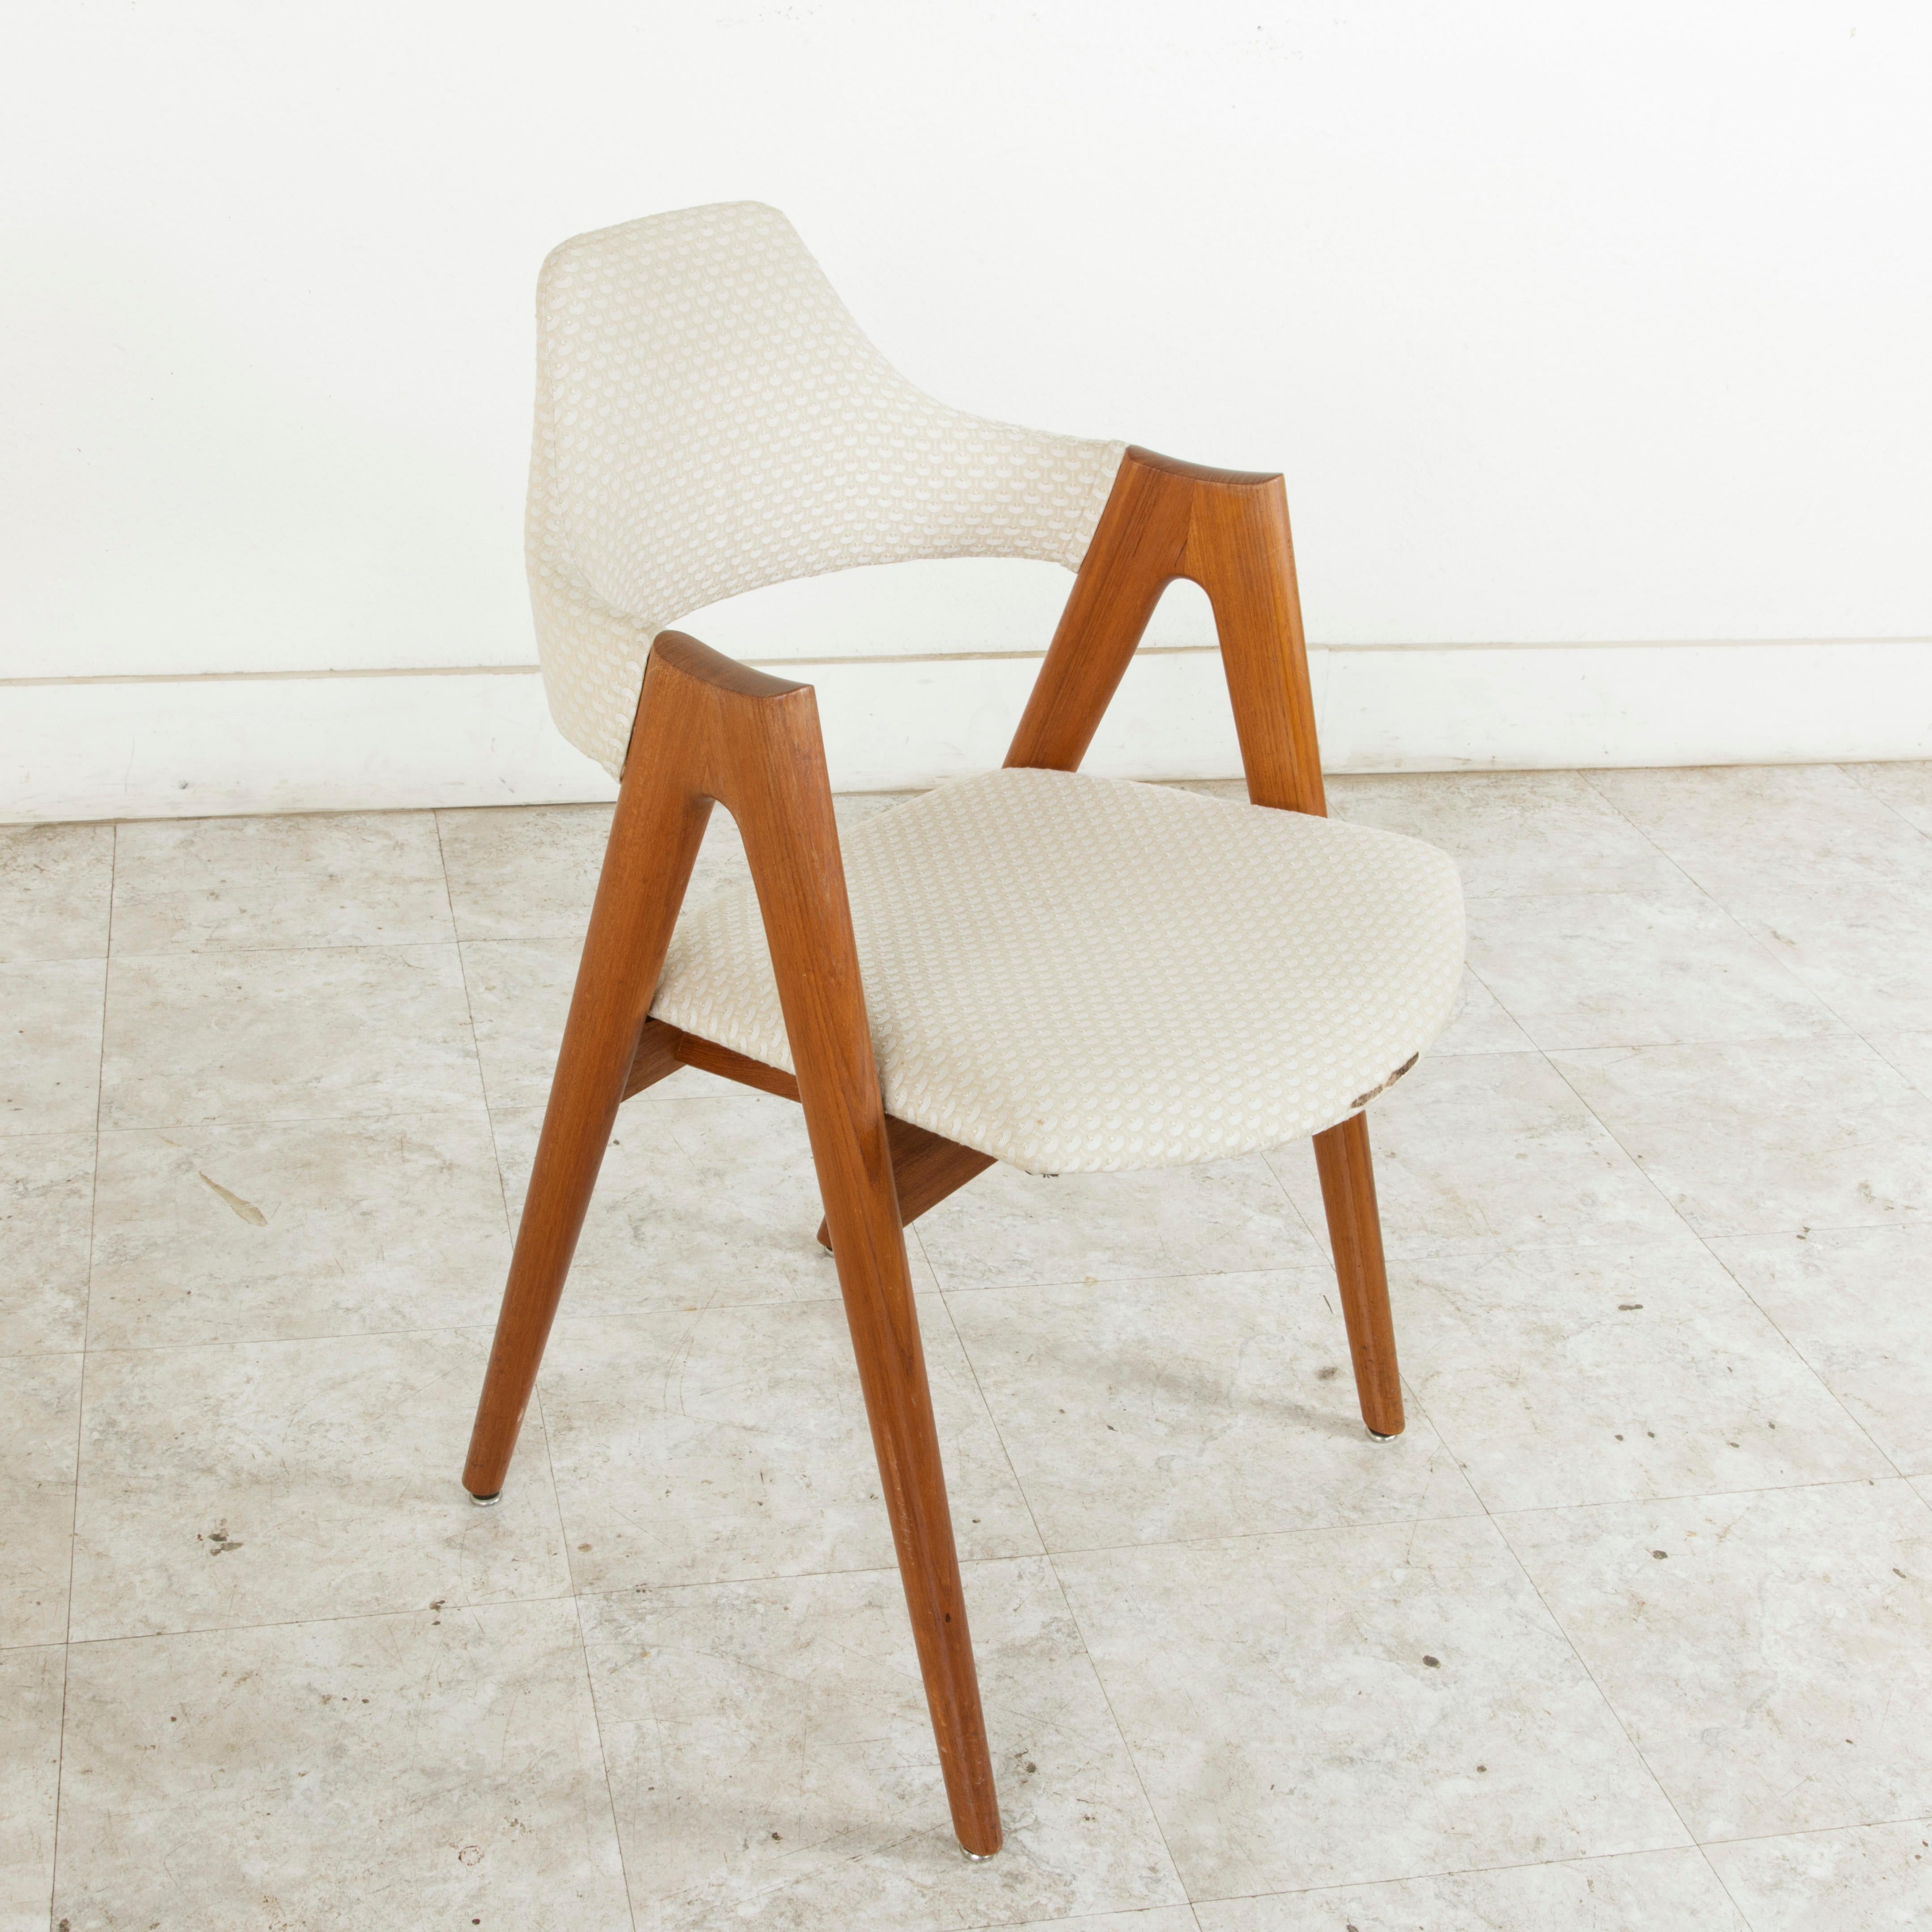 Pair of Midcentury Danish Teak Compass Chairs Designed by Kai Kristiansen 1